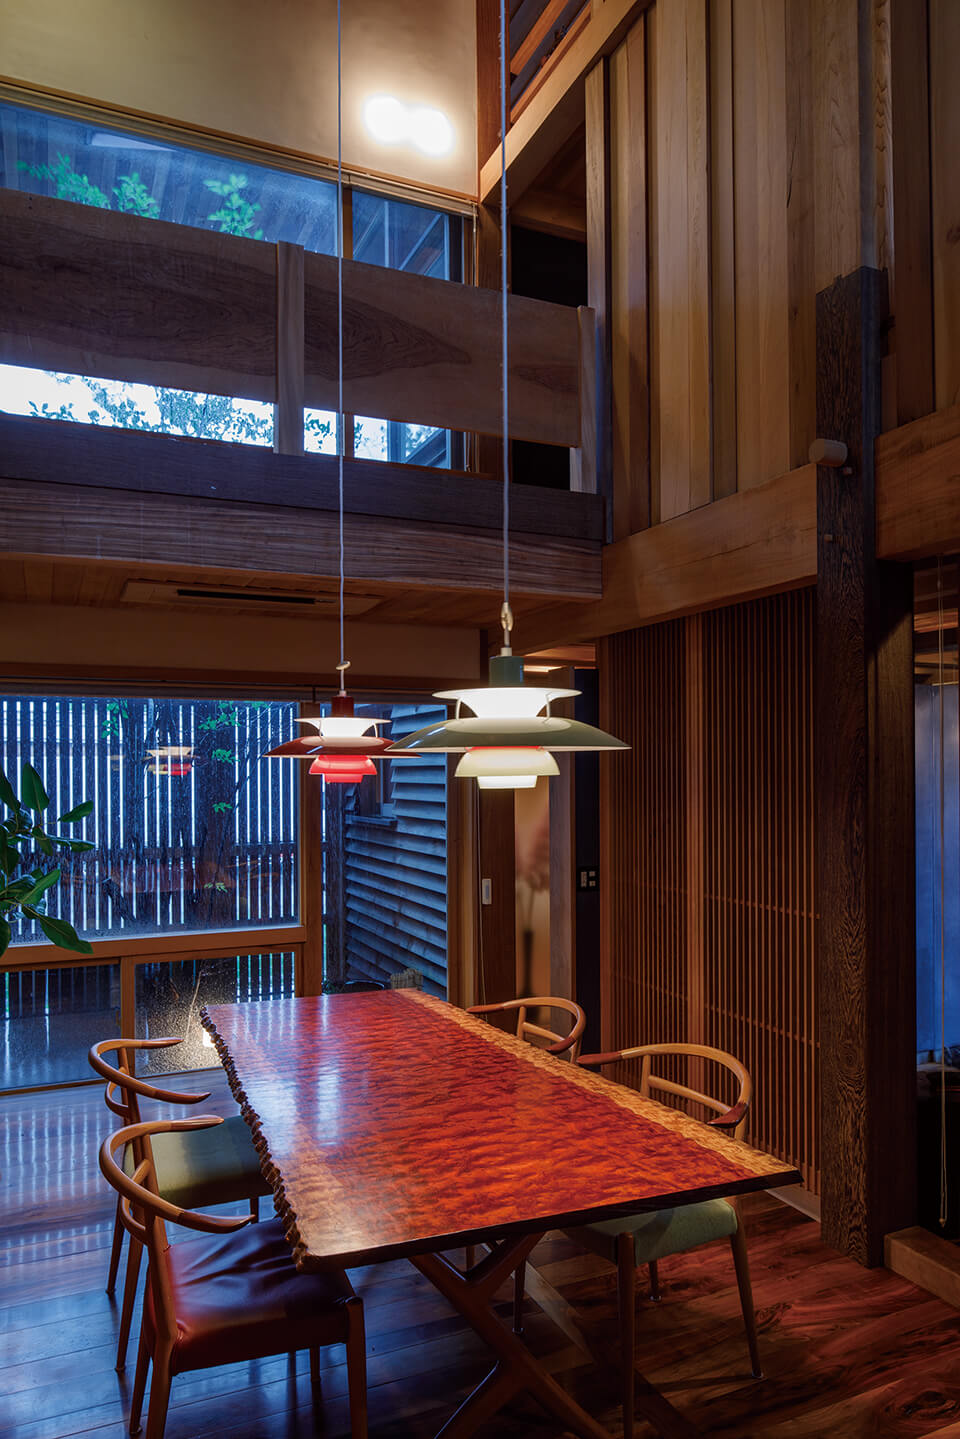 住空間にさまざまな無垢材を用いたショールーム「大川の家」。壁面に複数の樹種を組み合わせた仕上げや、住宅設備を木材とうまく融合させるアイデアを体感できる